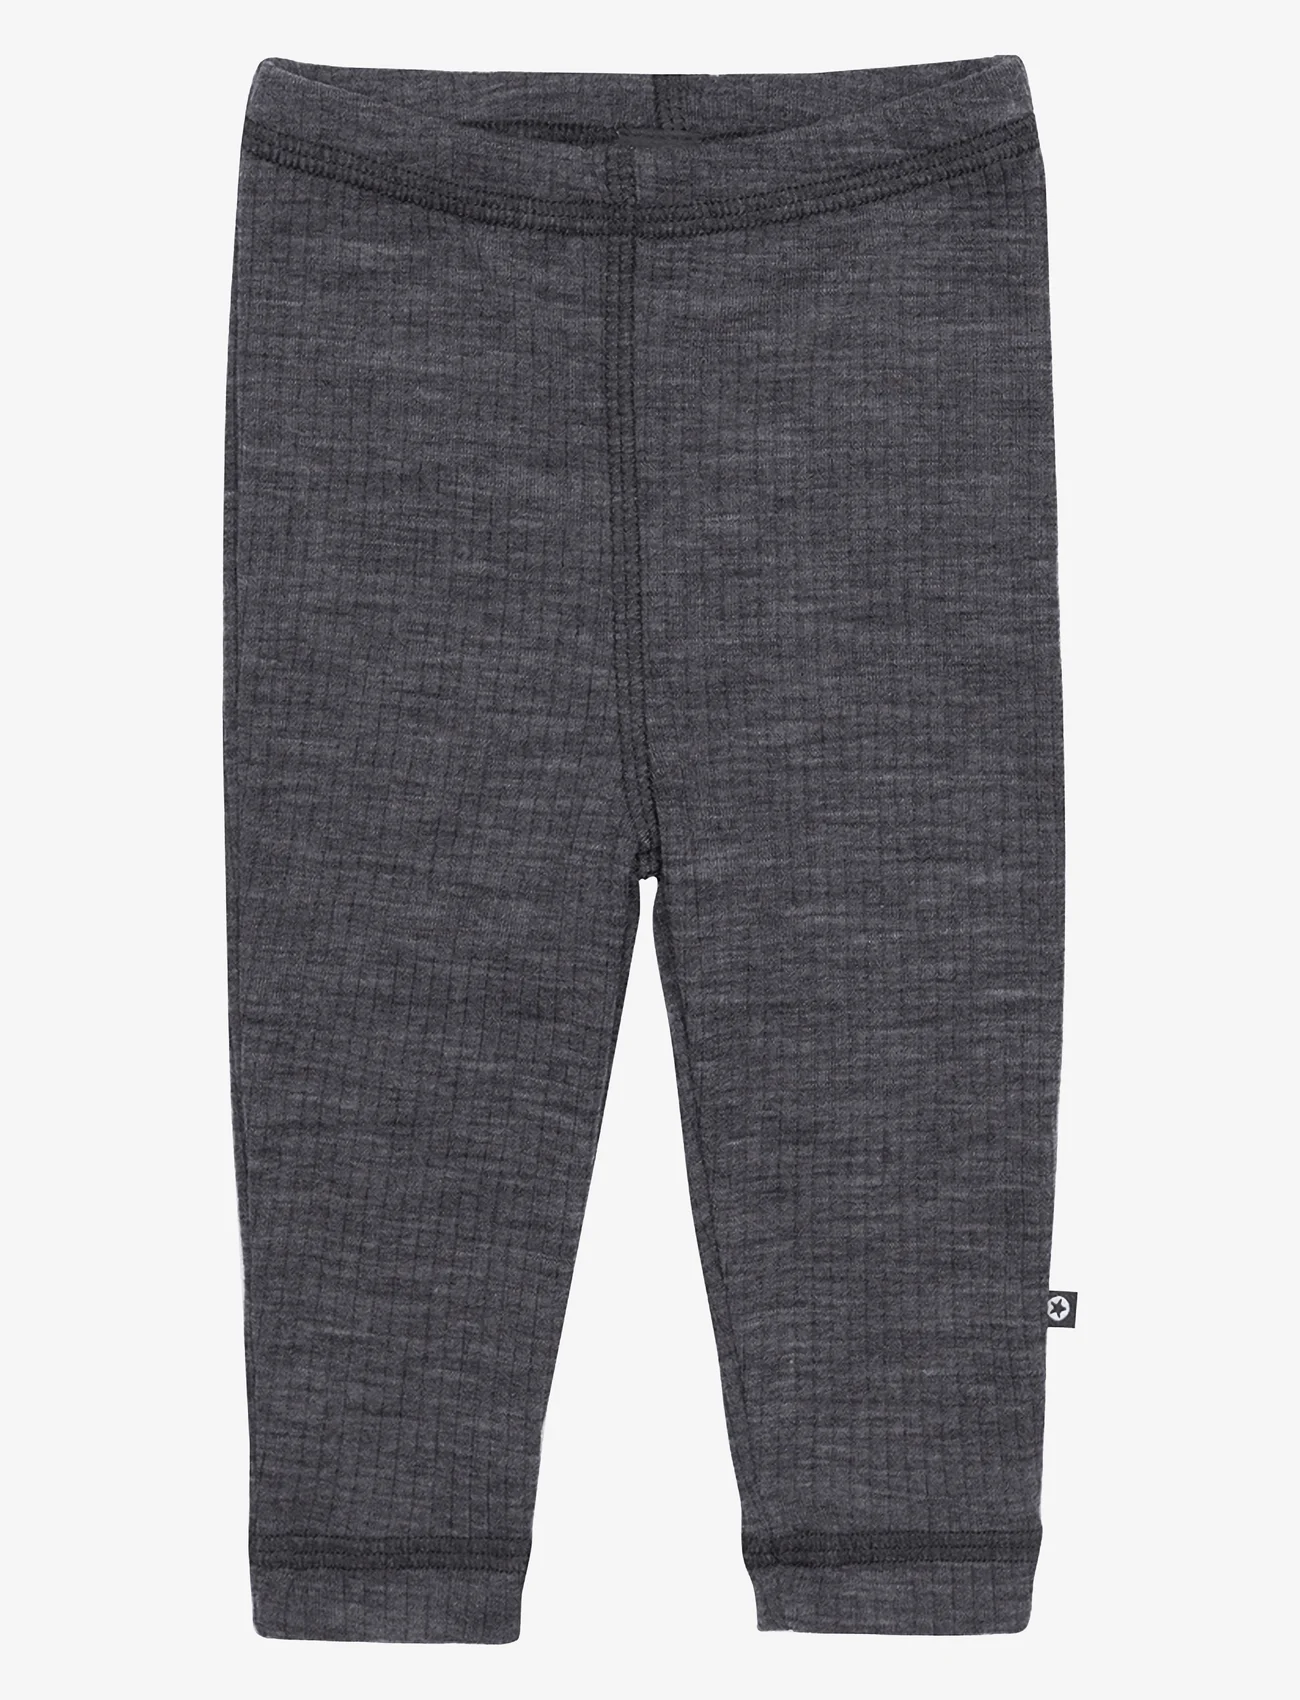 Smallstuff - Legging, dark grey drop needle, merino wool - laagste prijzen - dark grey - 0